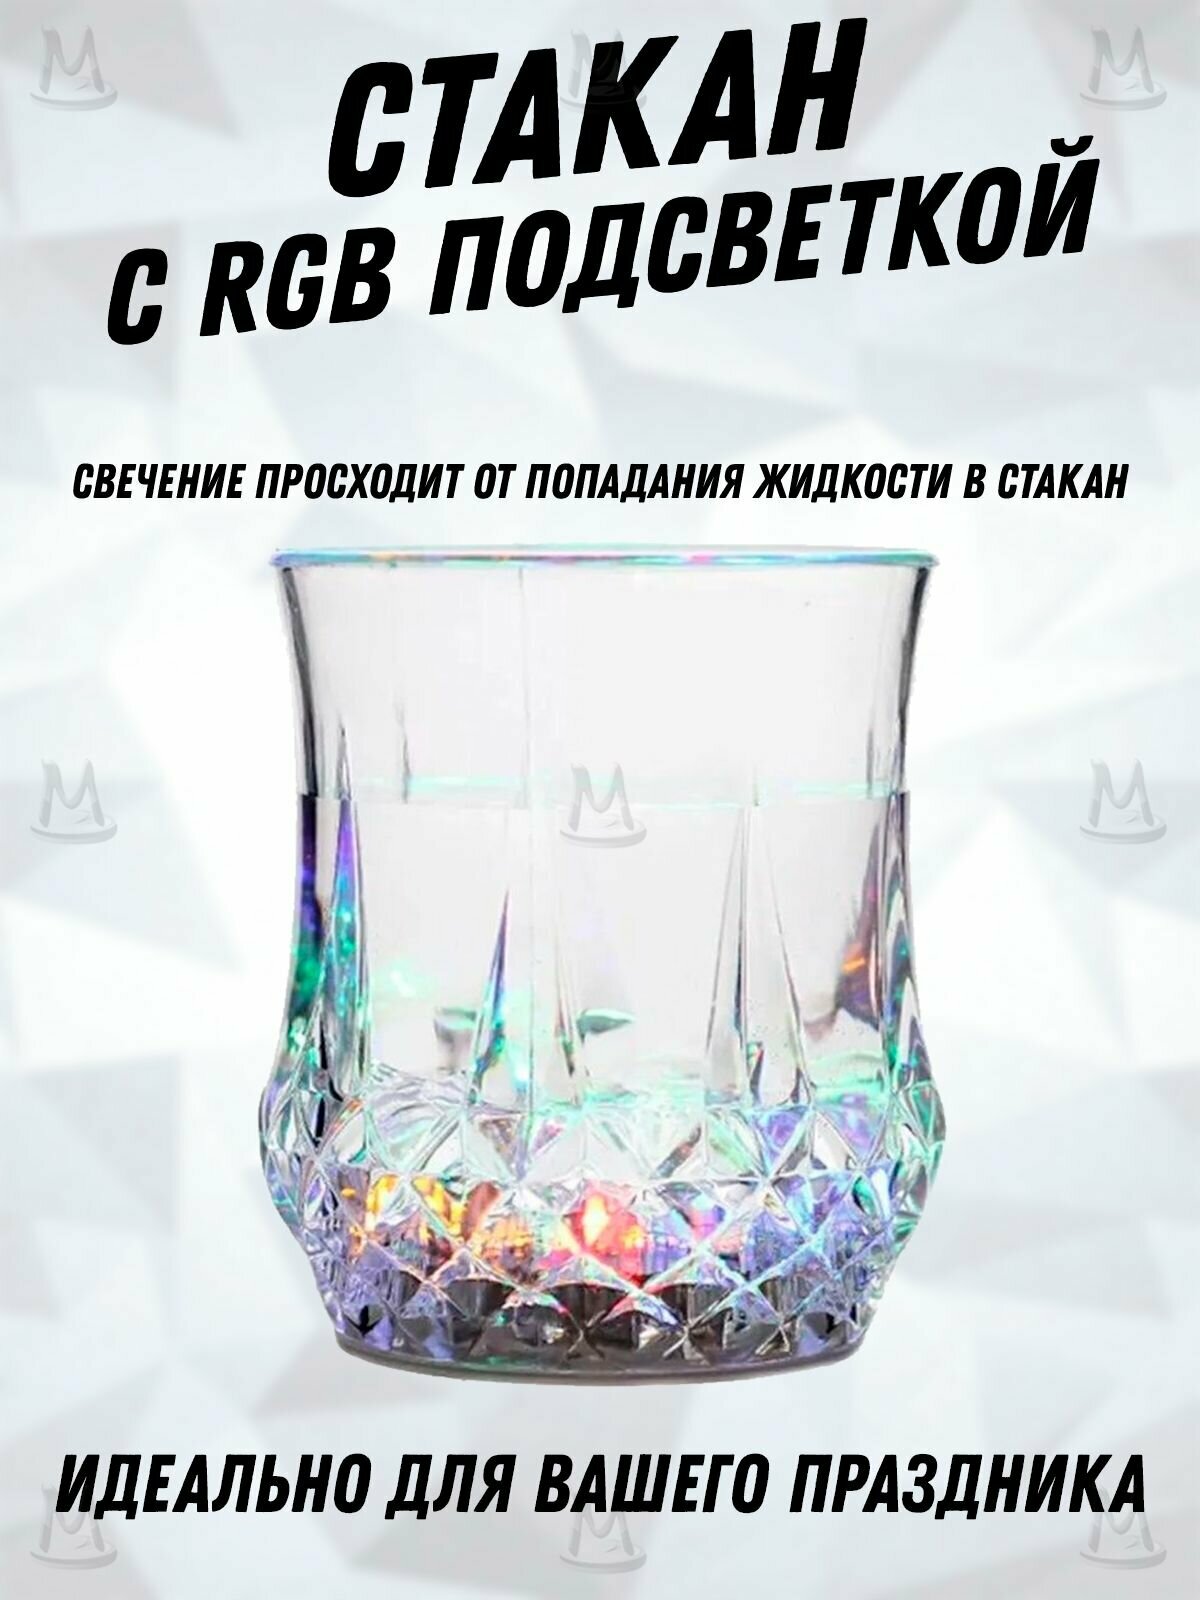 Cтакан с подсветкой RGB, светящаяся кружка для напитков алкоголя, вечеринок, праздников, дня рождения, нового года.